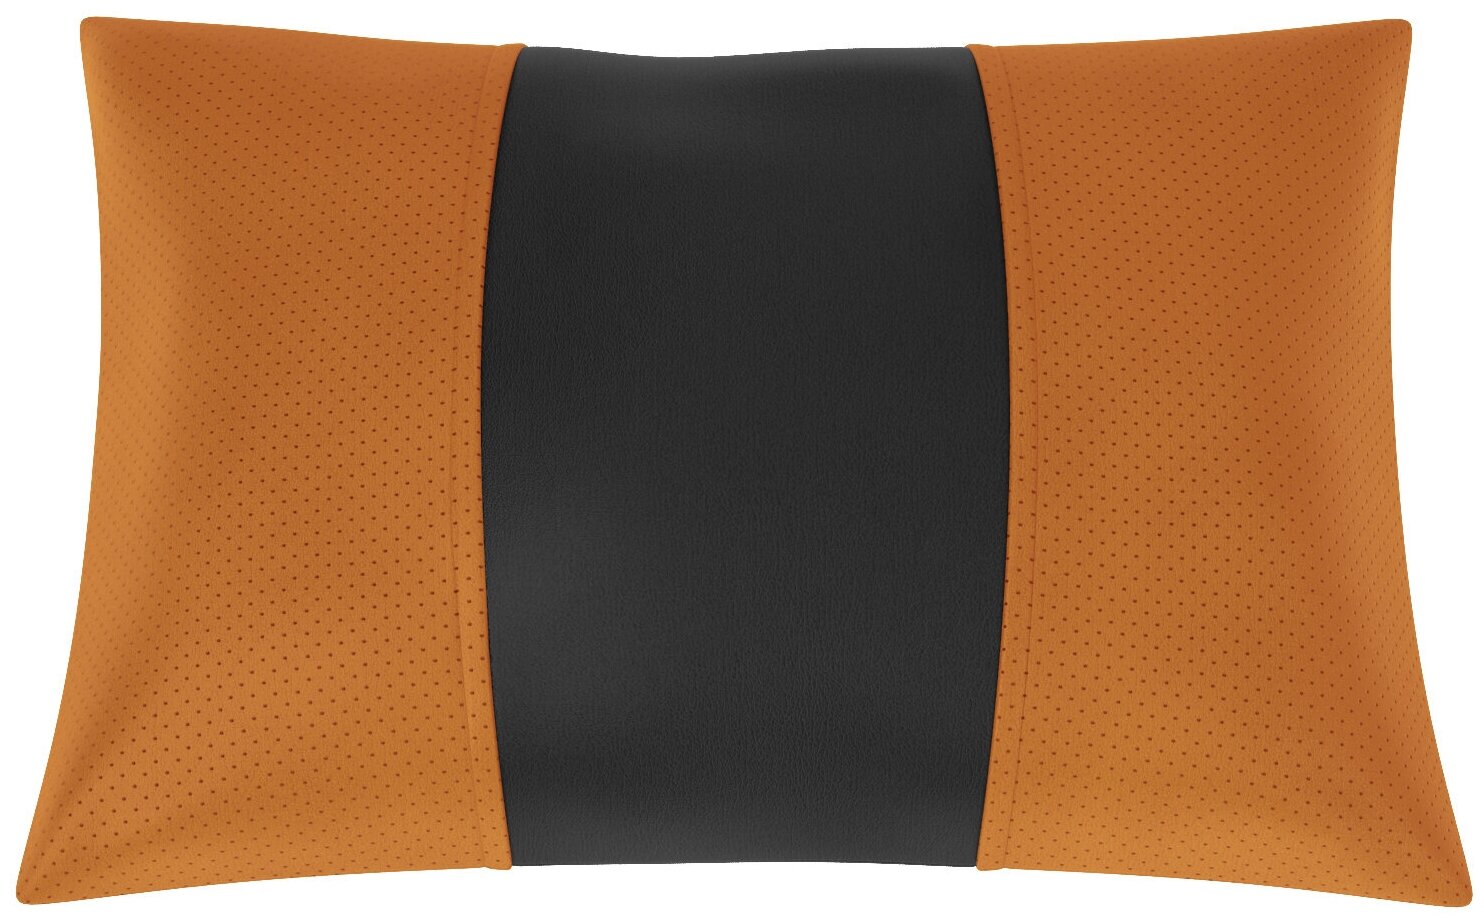 Автомобильная подушка для ВАЗ Лада Ларгус. Экокожа. Середина: чёрная гладкая экокожа. Боковины: оранжевая экокожа с перфорацией. 1 шт.